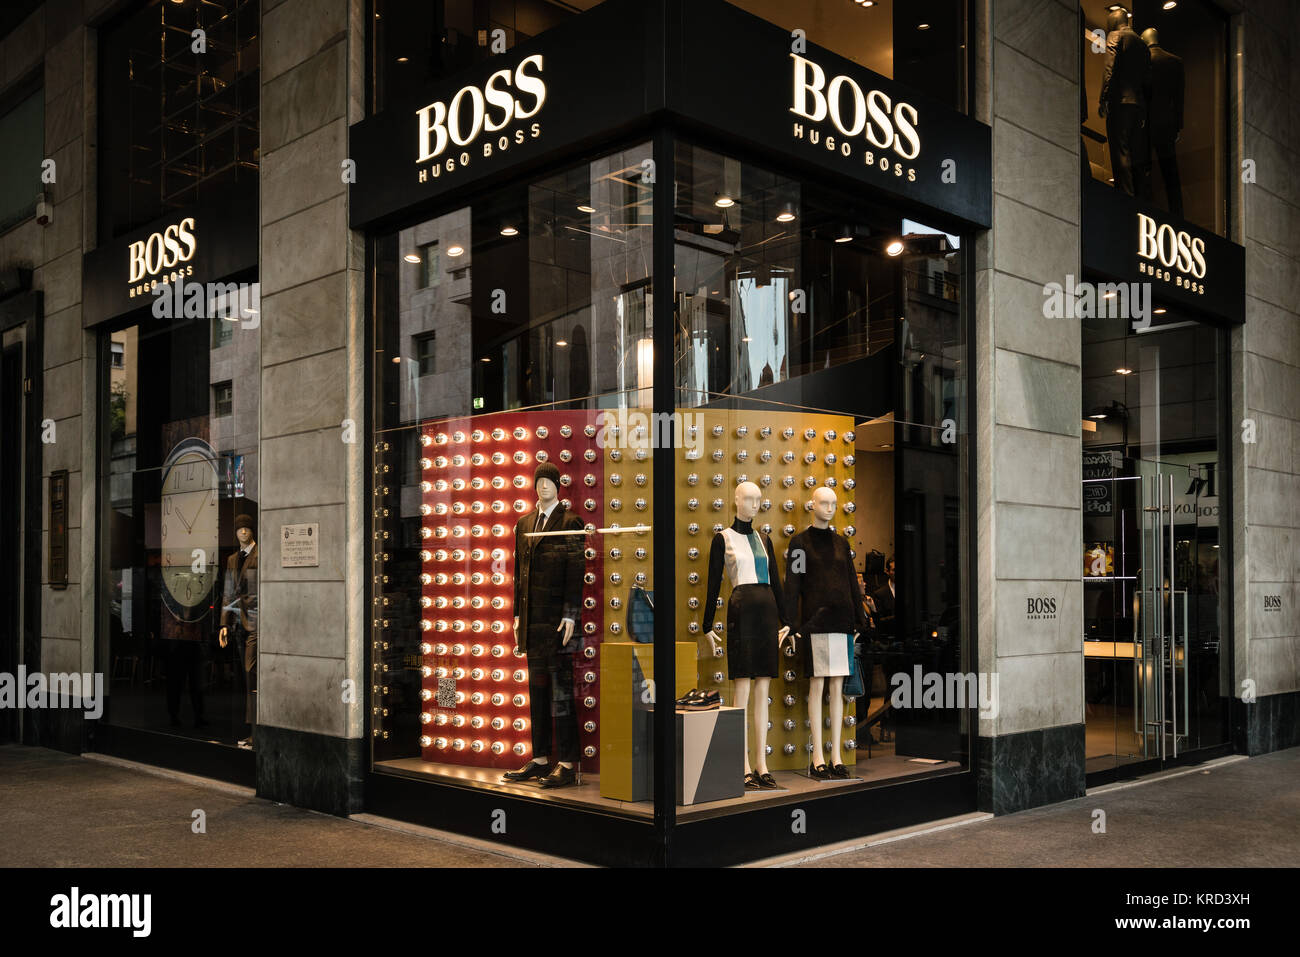 Mailand, Italien - 9. Oktober 2016: Schaufenster und Eingang eines Hugo Boss  Shop in Mailand, Italien. Wenige Tage nach der Mailänder Modewoche. Herbst  Winter 2017 Coll Stockfotografie - Alamy